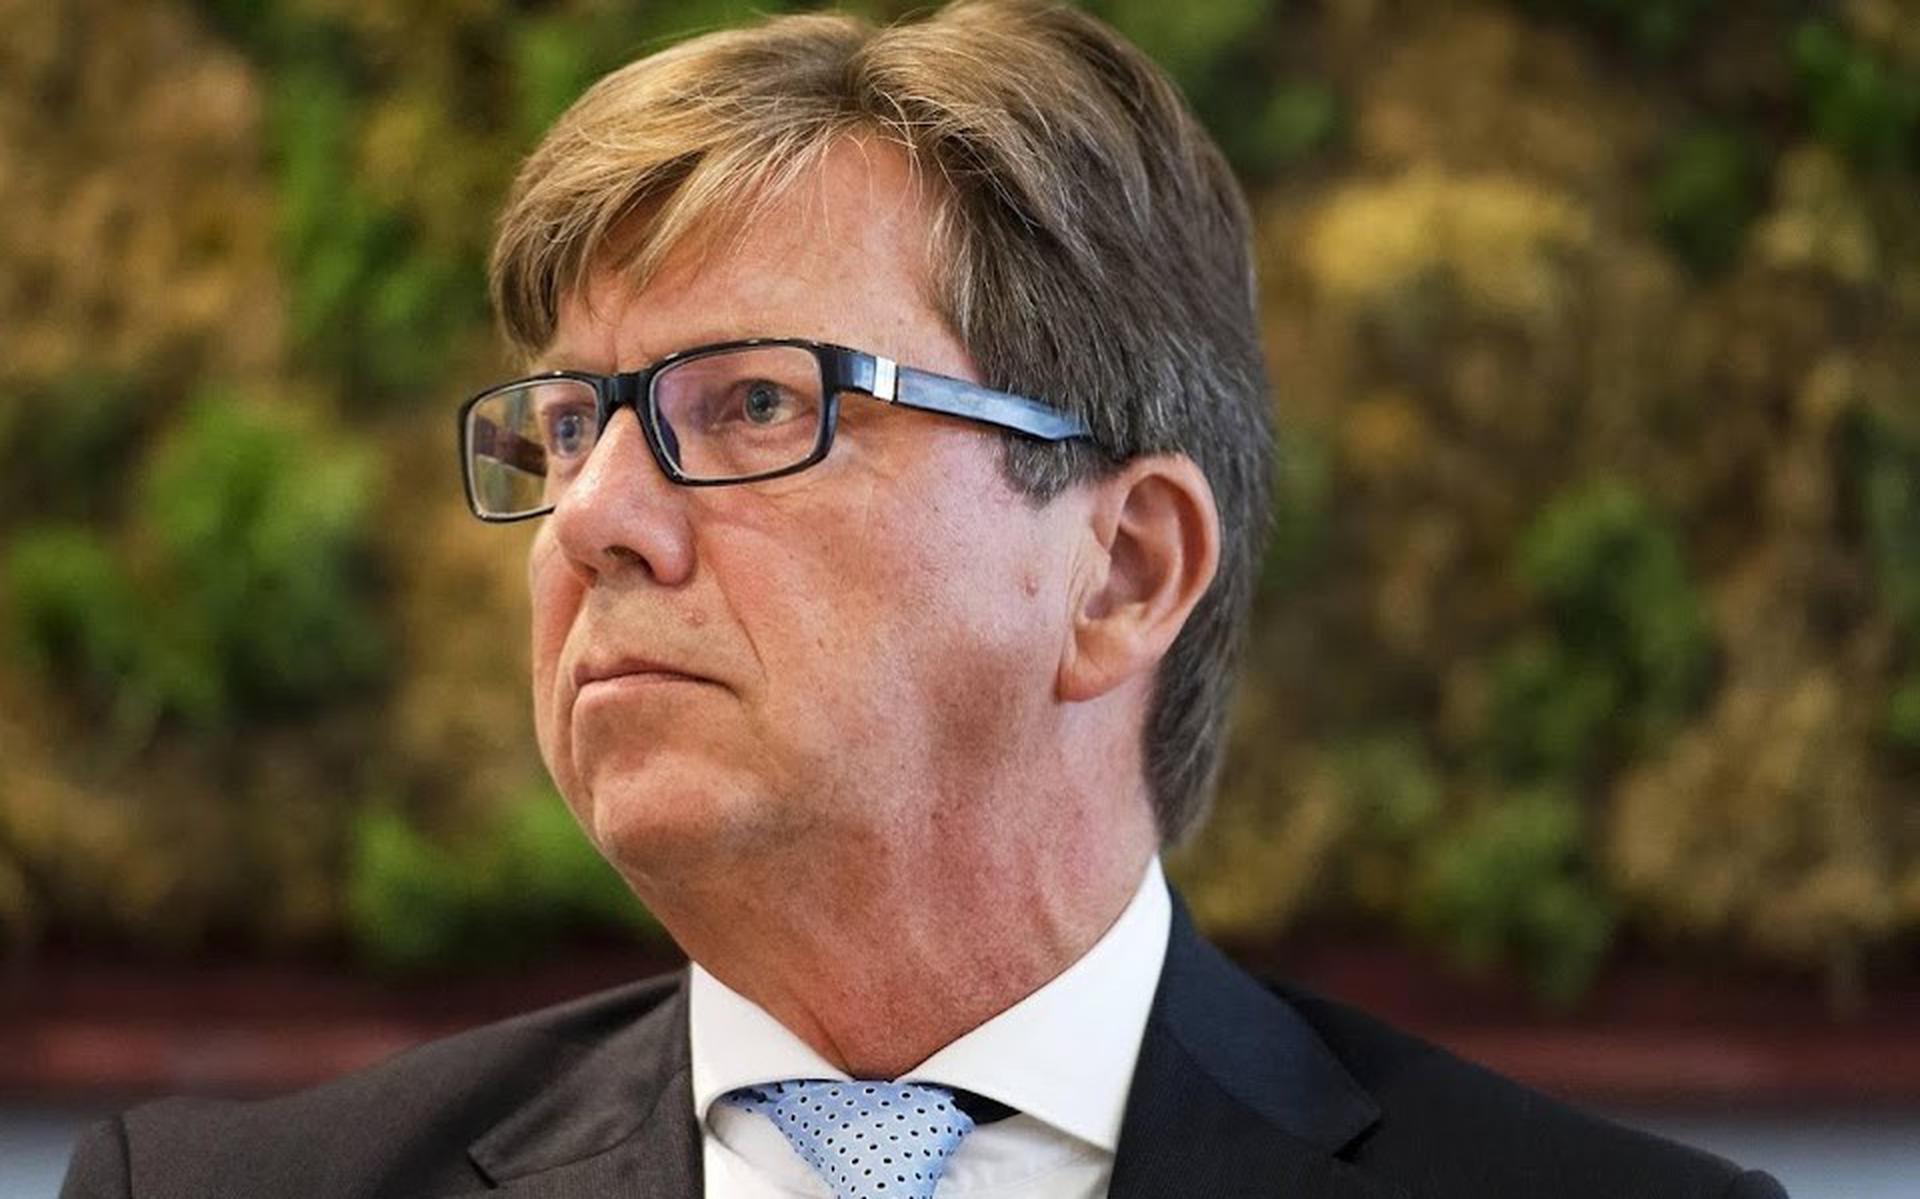 Het kabinet kondigde eerder aan geen onderzoek meer te laten doen naar de oorzaak bij schadegevallen tot 40.000 euro. "Door deze maatregel wordt de zwaarst getroffen groep niet geholpen’’, zegt IMG-voorzitter Henk Korvinus.